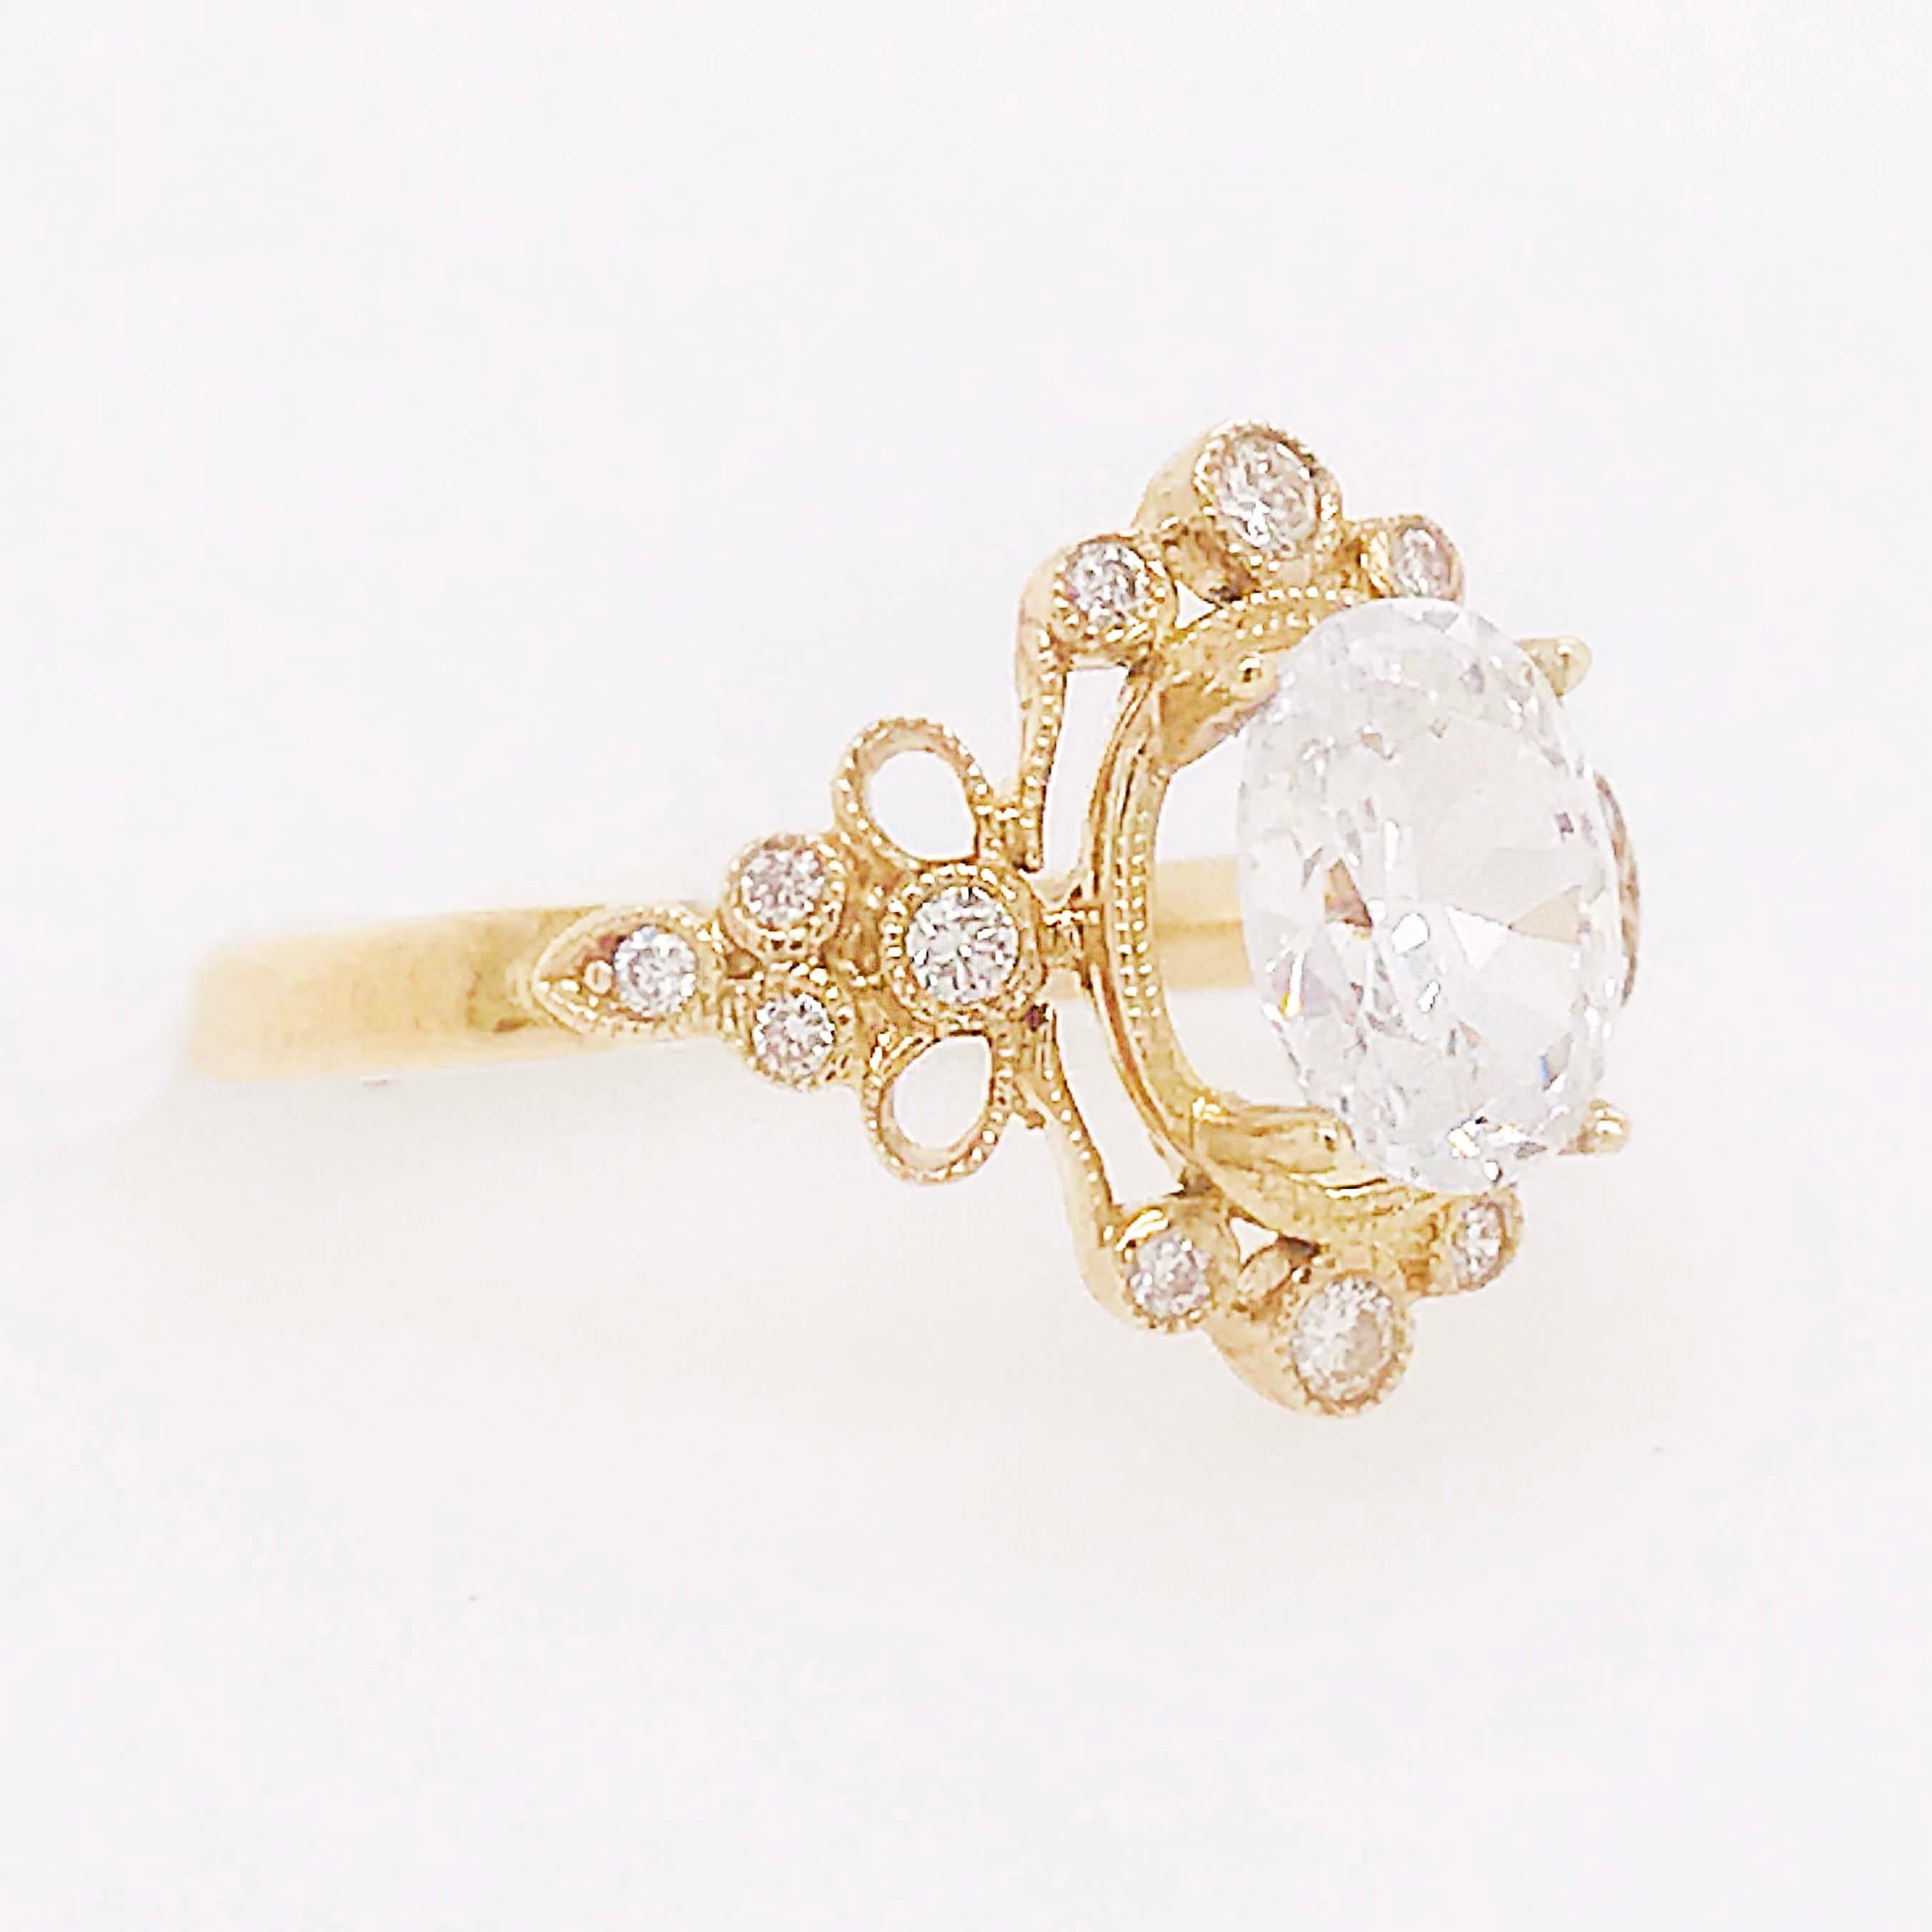 1.2 oval diamond ring